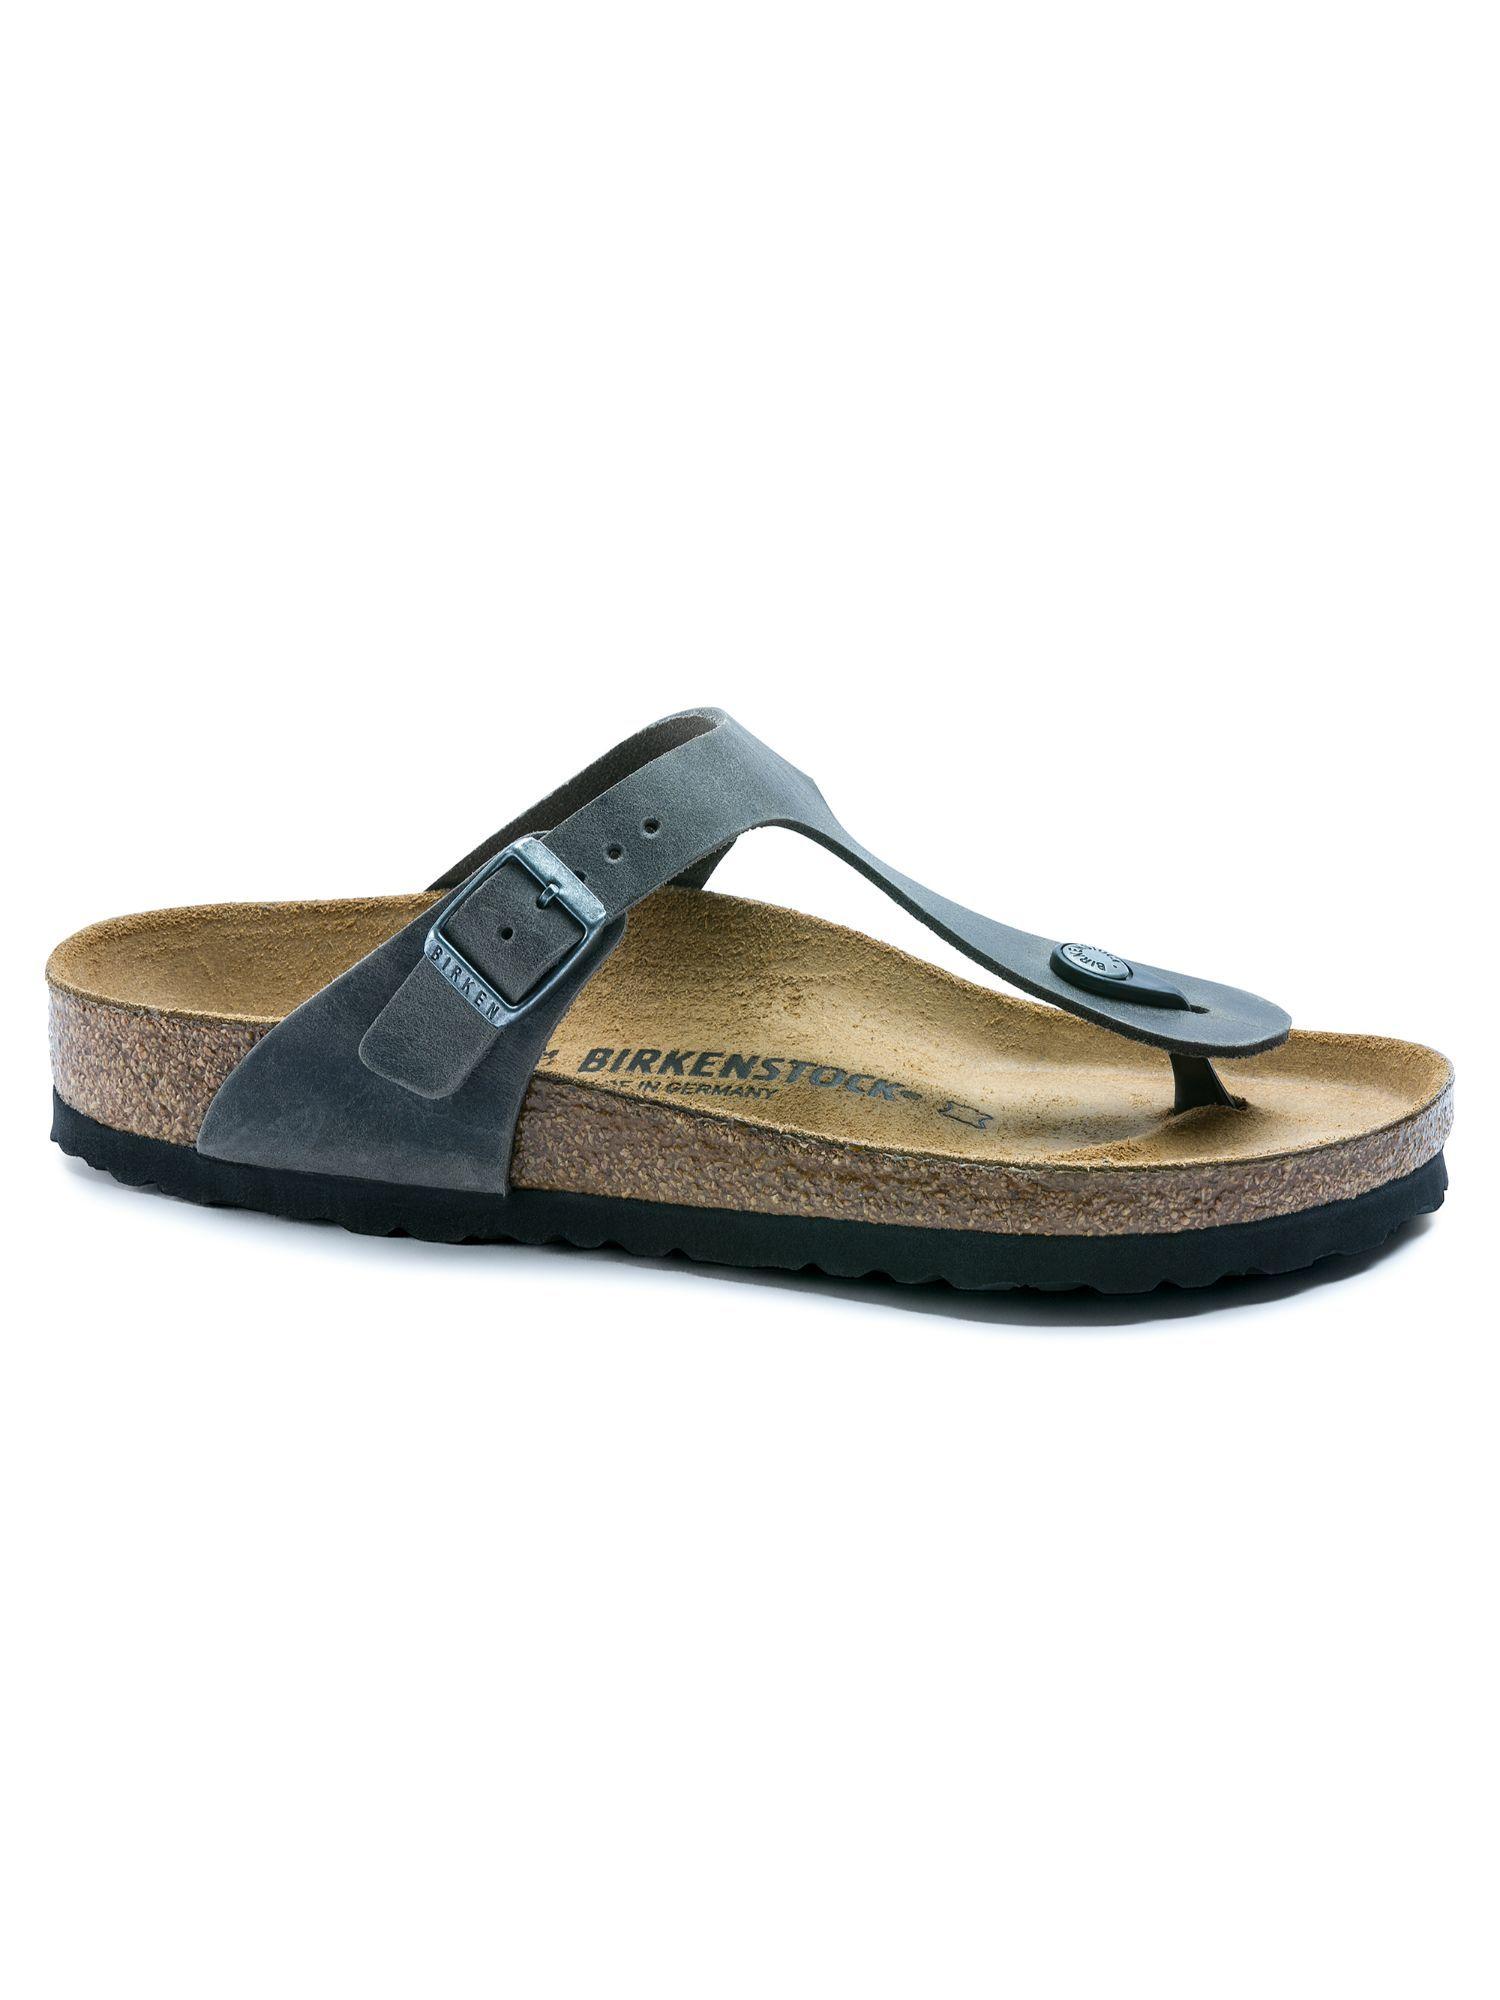 gizeh-iron-regular-width-unisex-thong-sandals